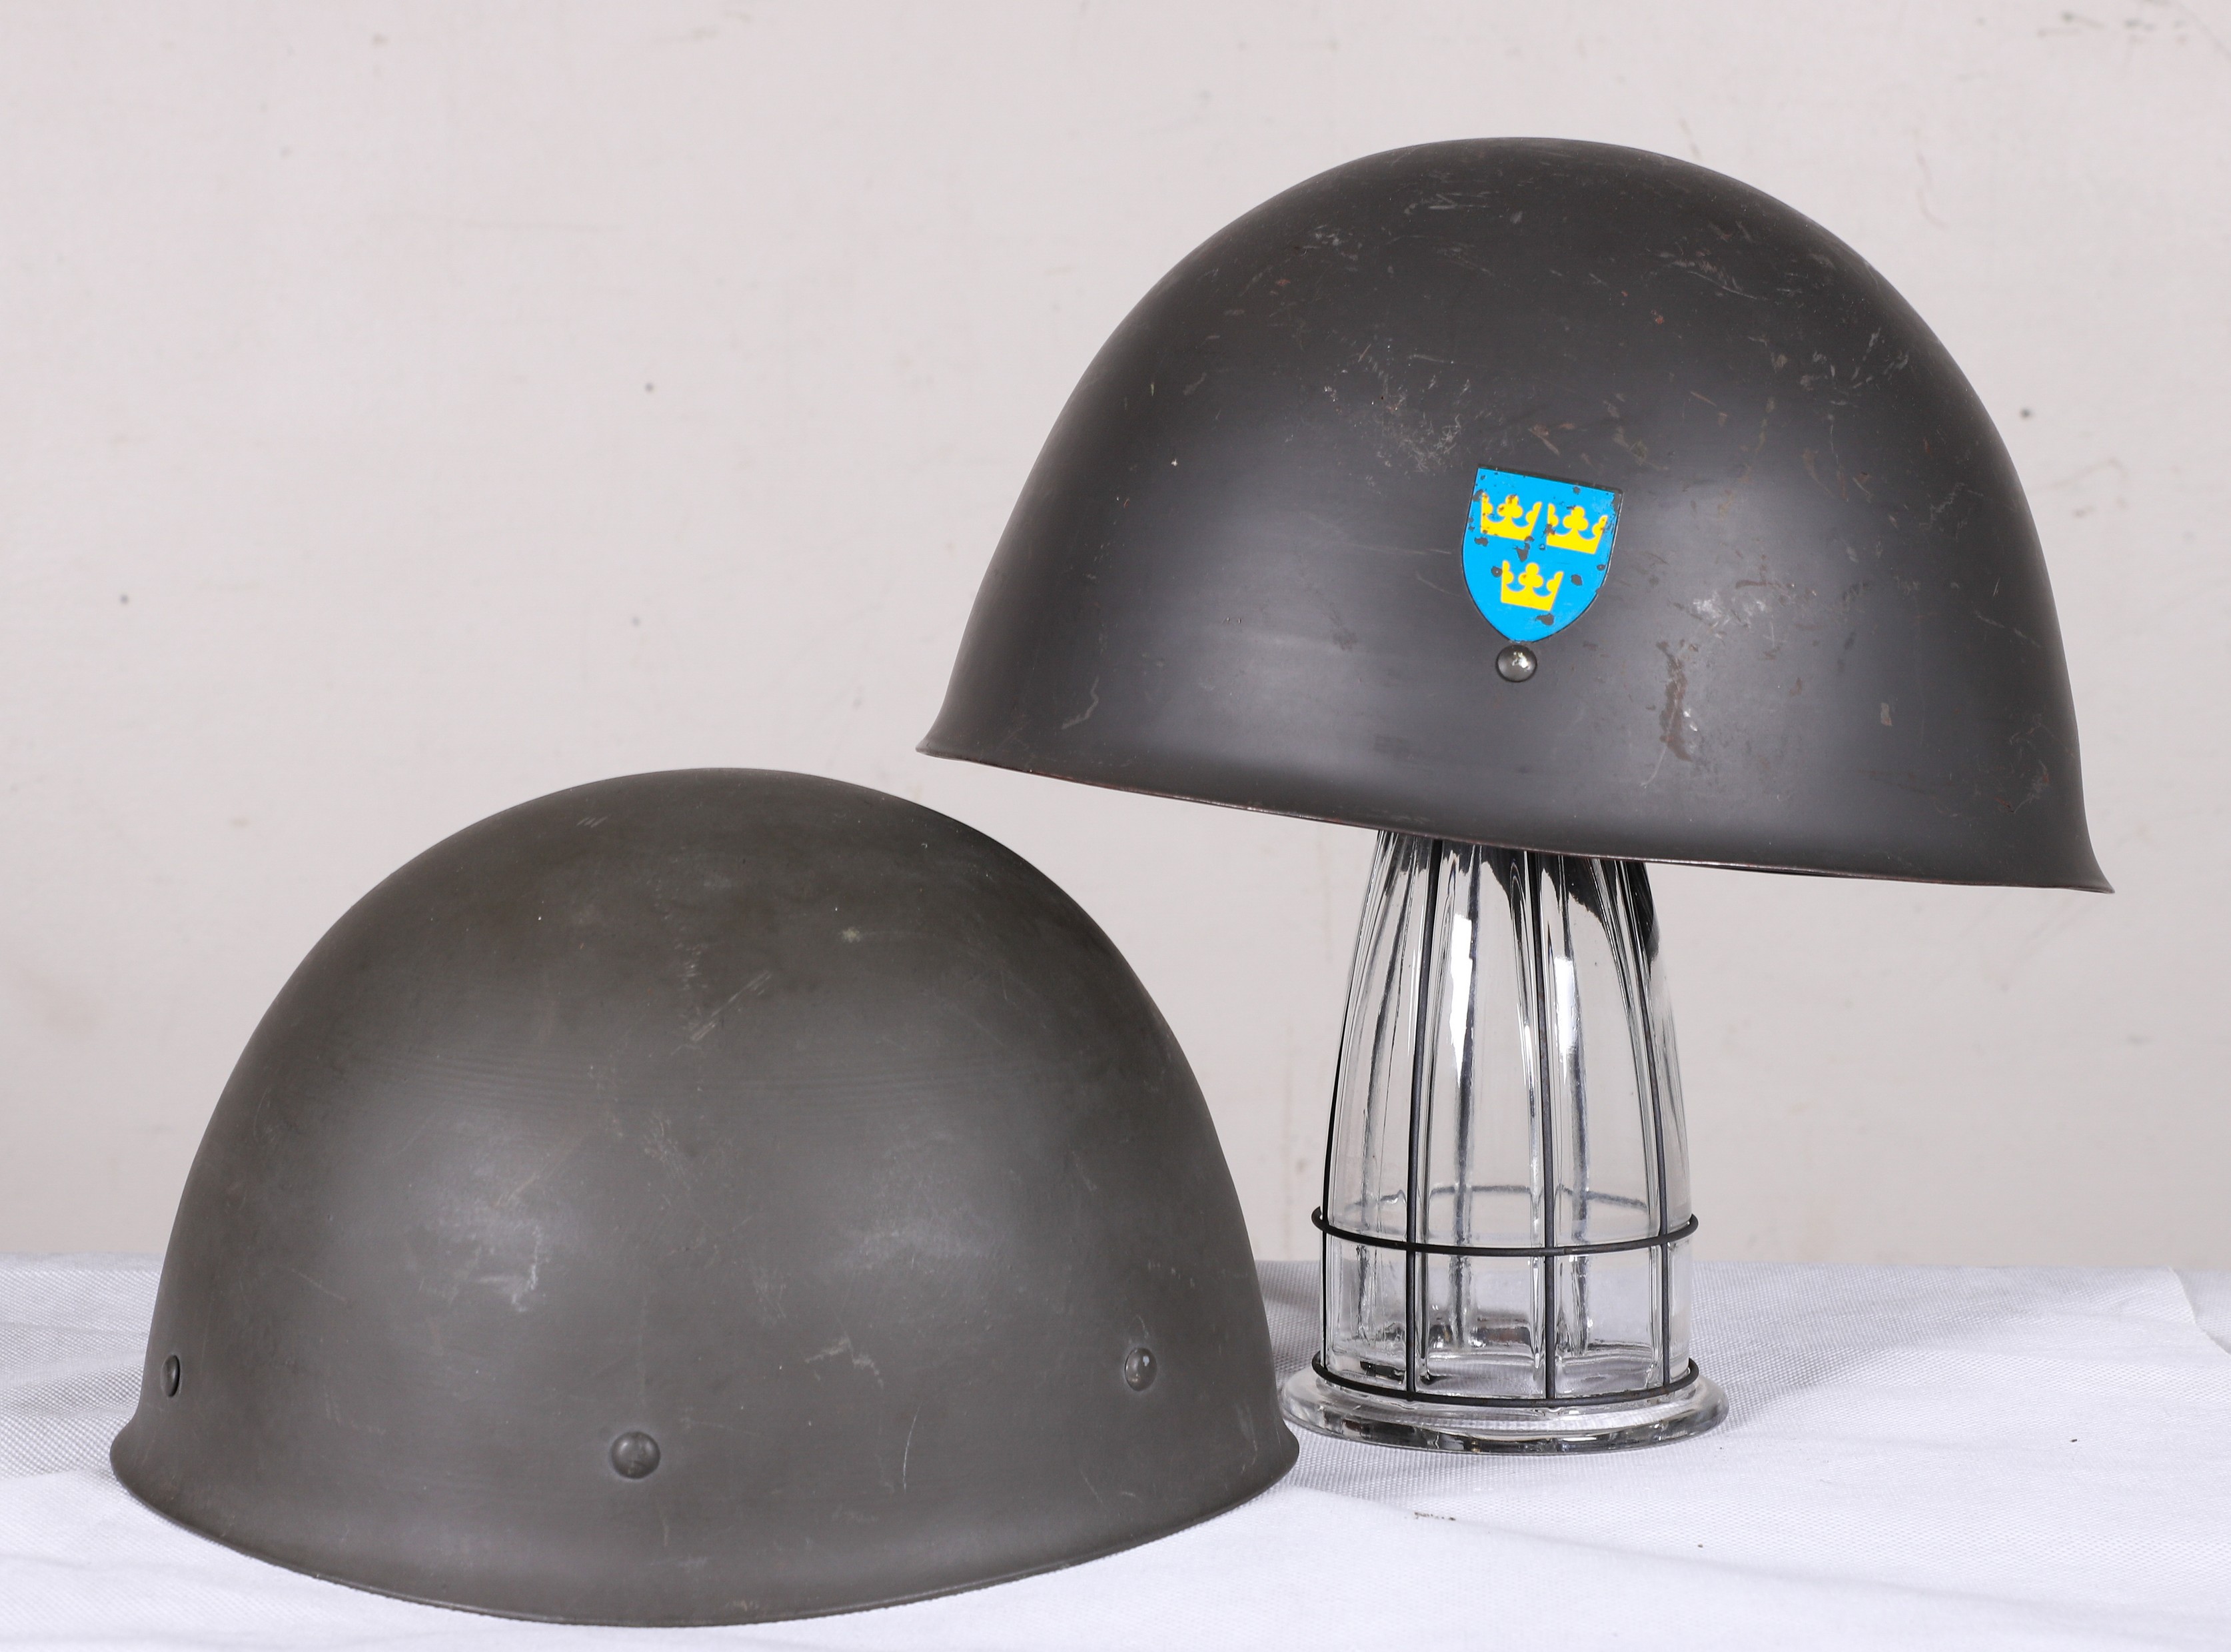 (2) Swedish military helmets, refurbished